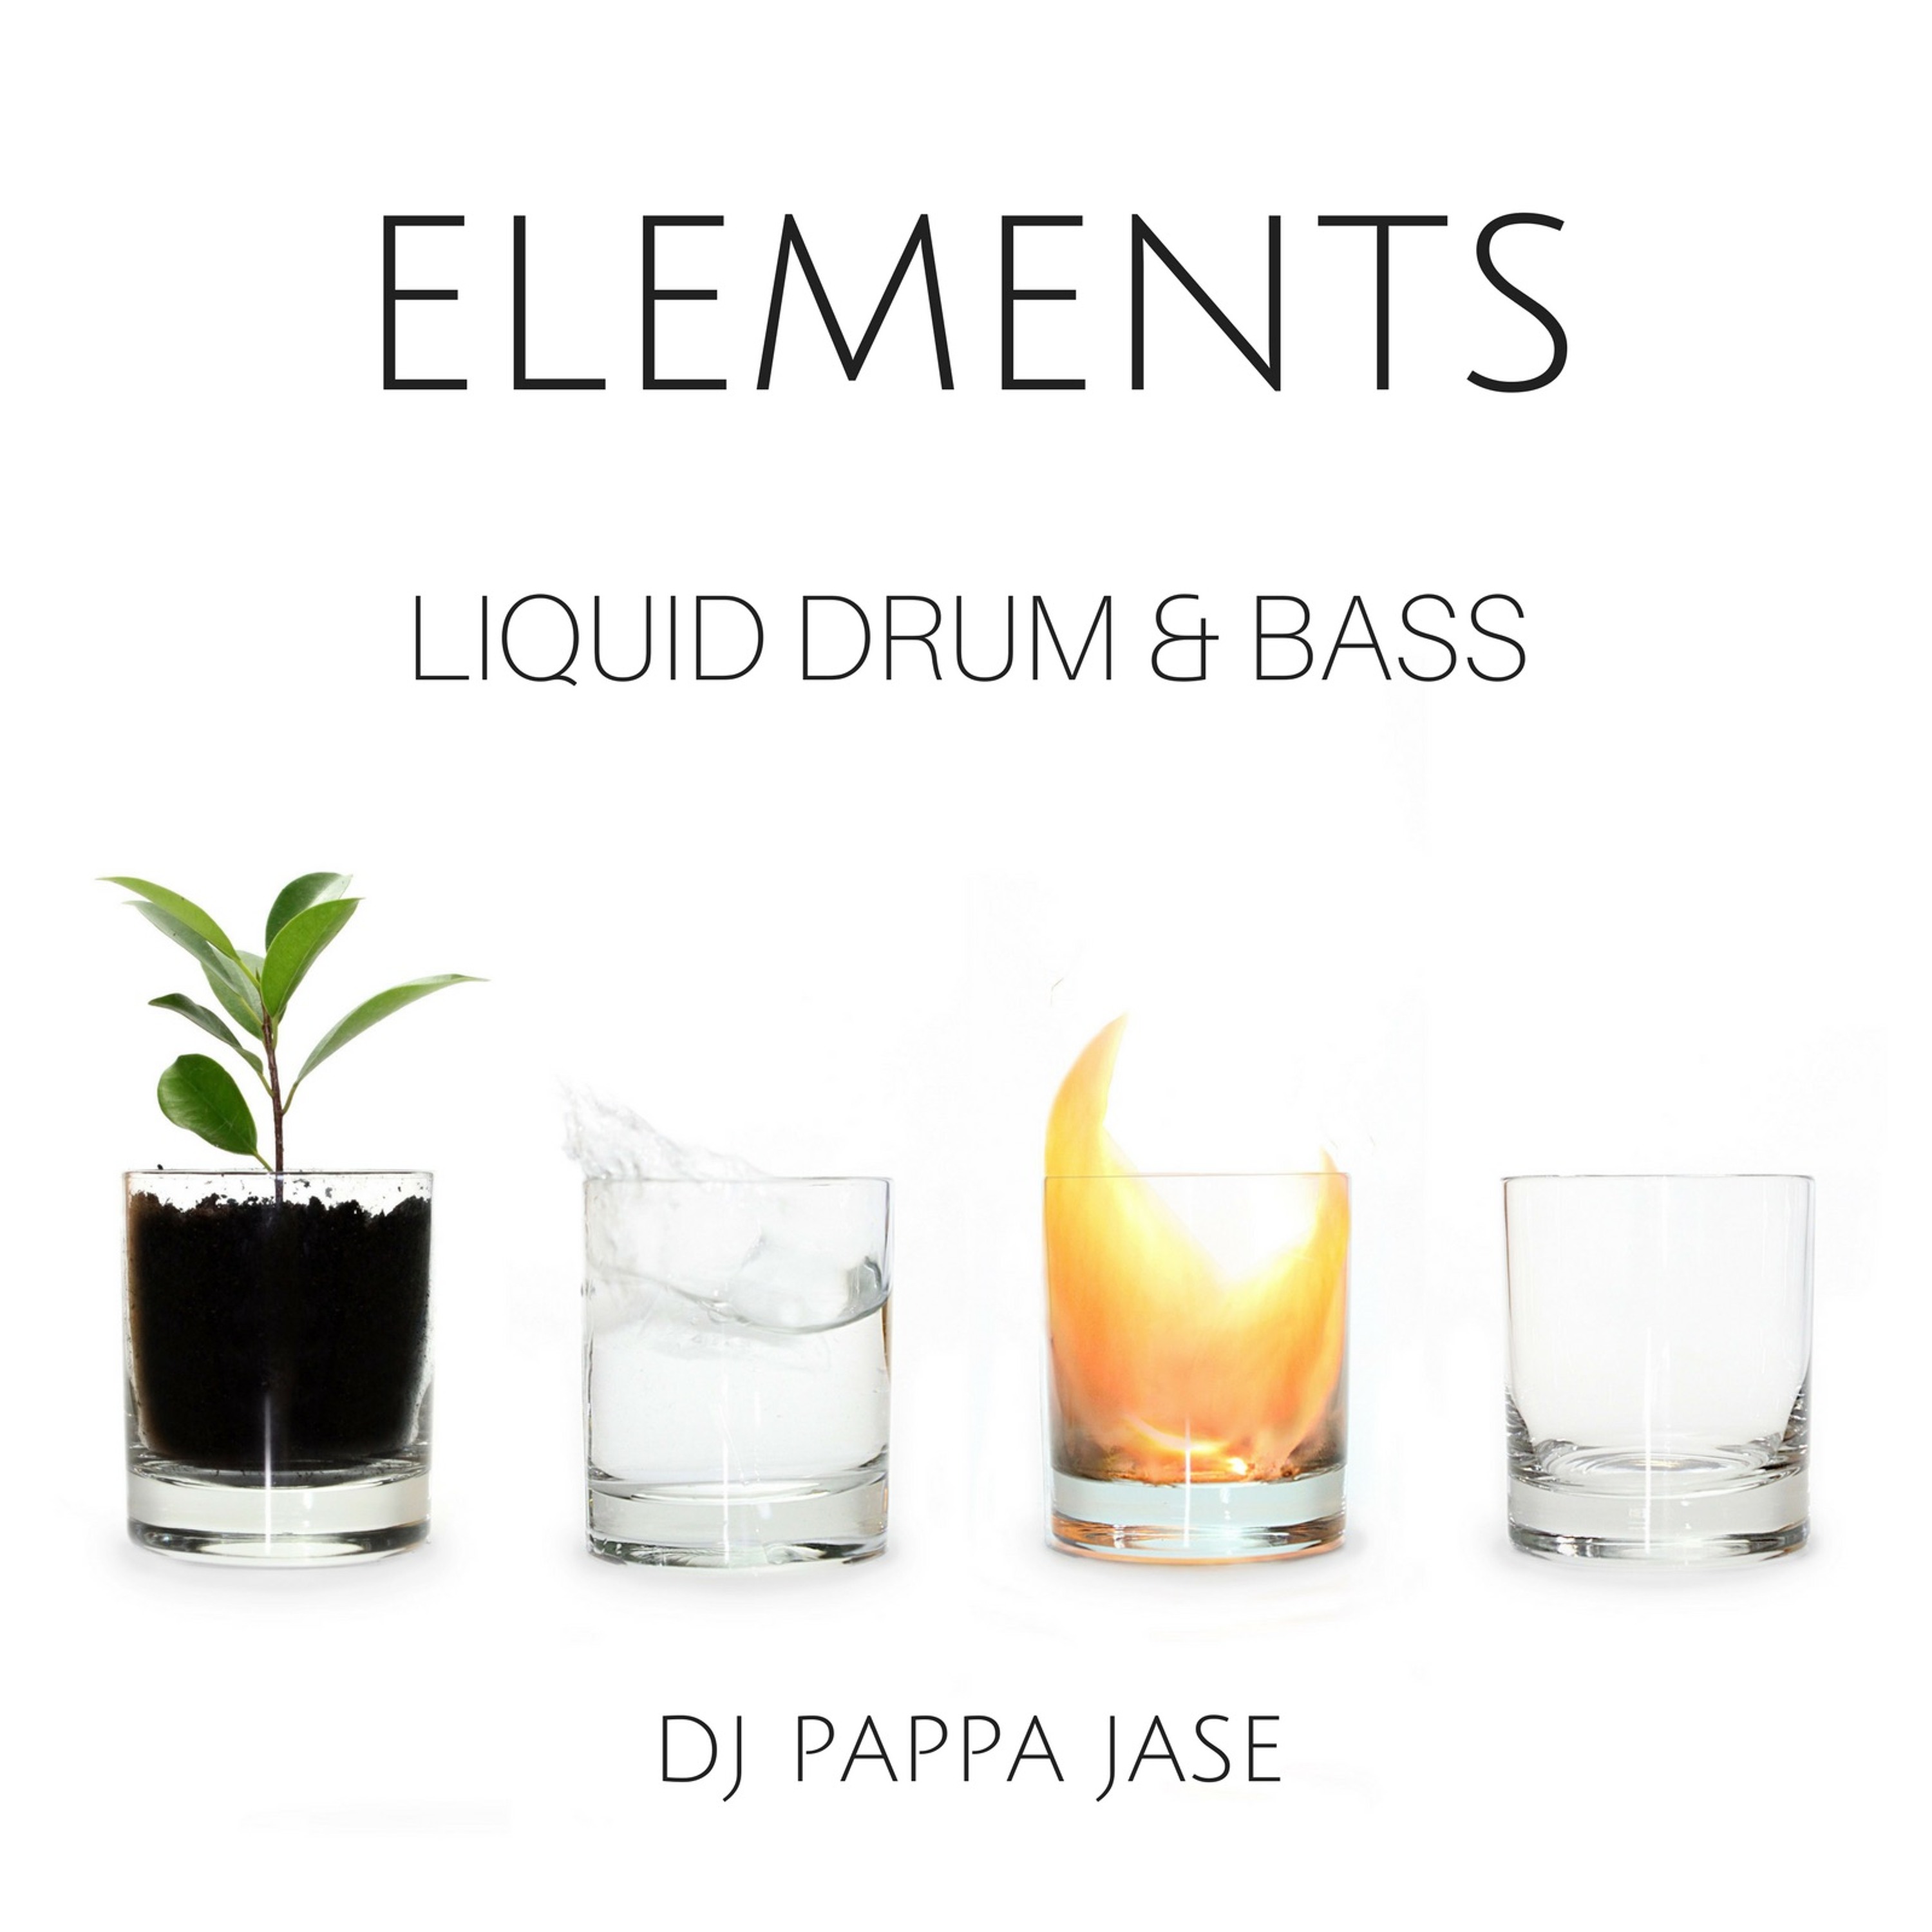 Elements - A Liquid Drum & Bass Podcast EP 21: Live @ Haunted Science pres. SEBA Artwork